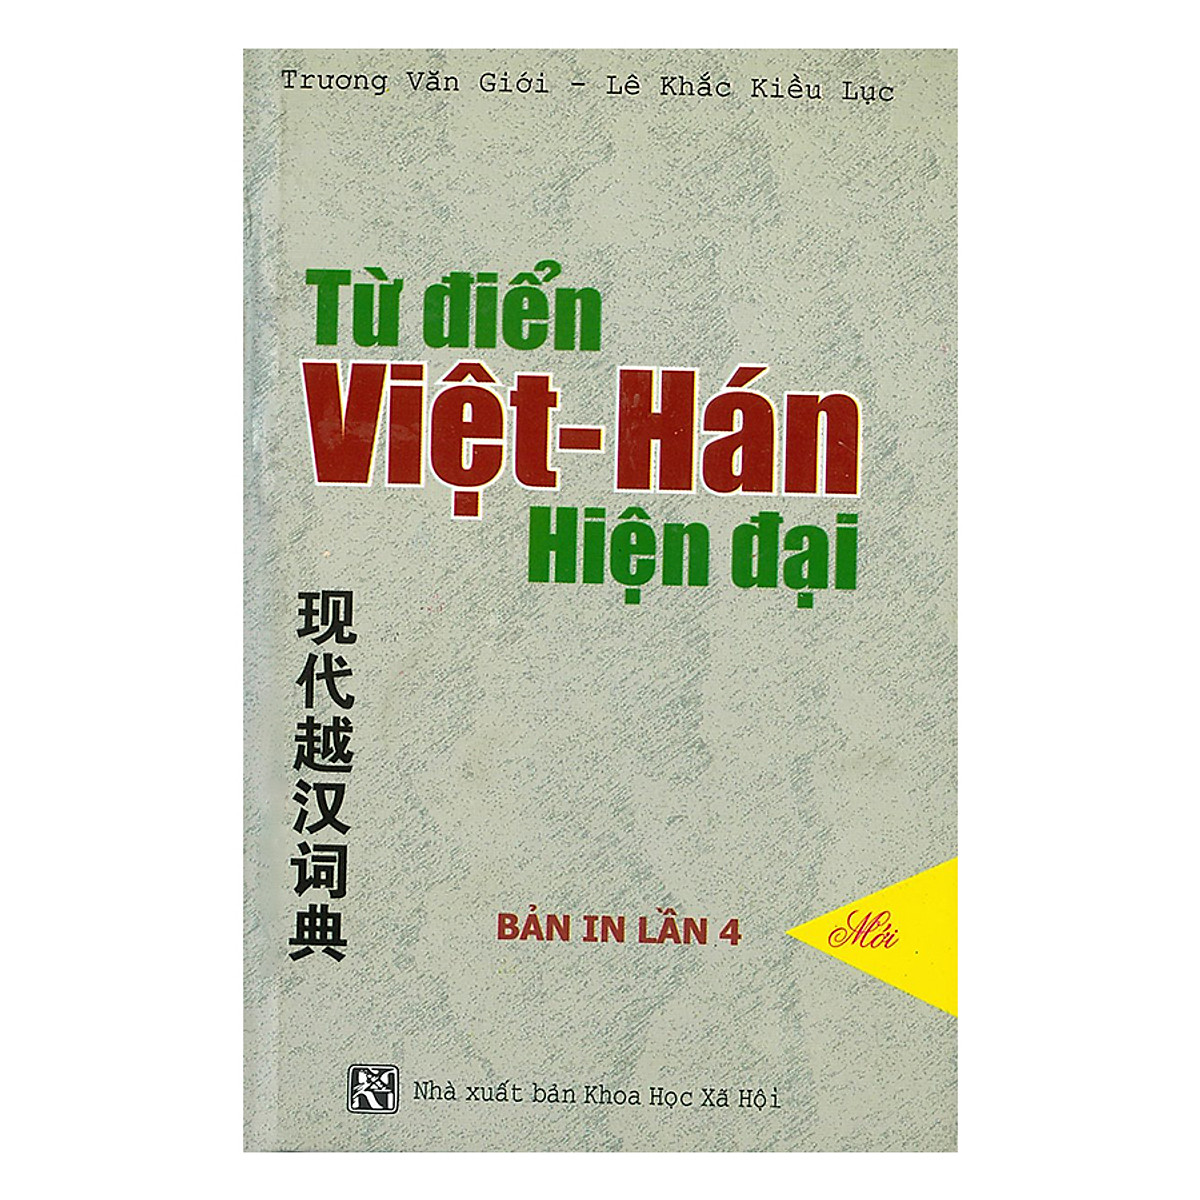 Mua Từ Điển Việt - Hán Hiện Đại Tại Nhà Sách Fahasa